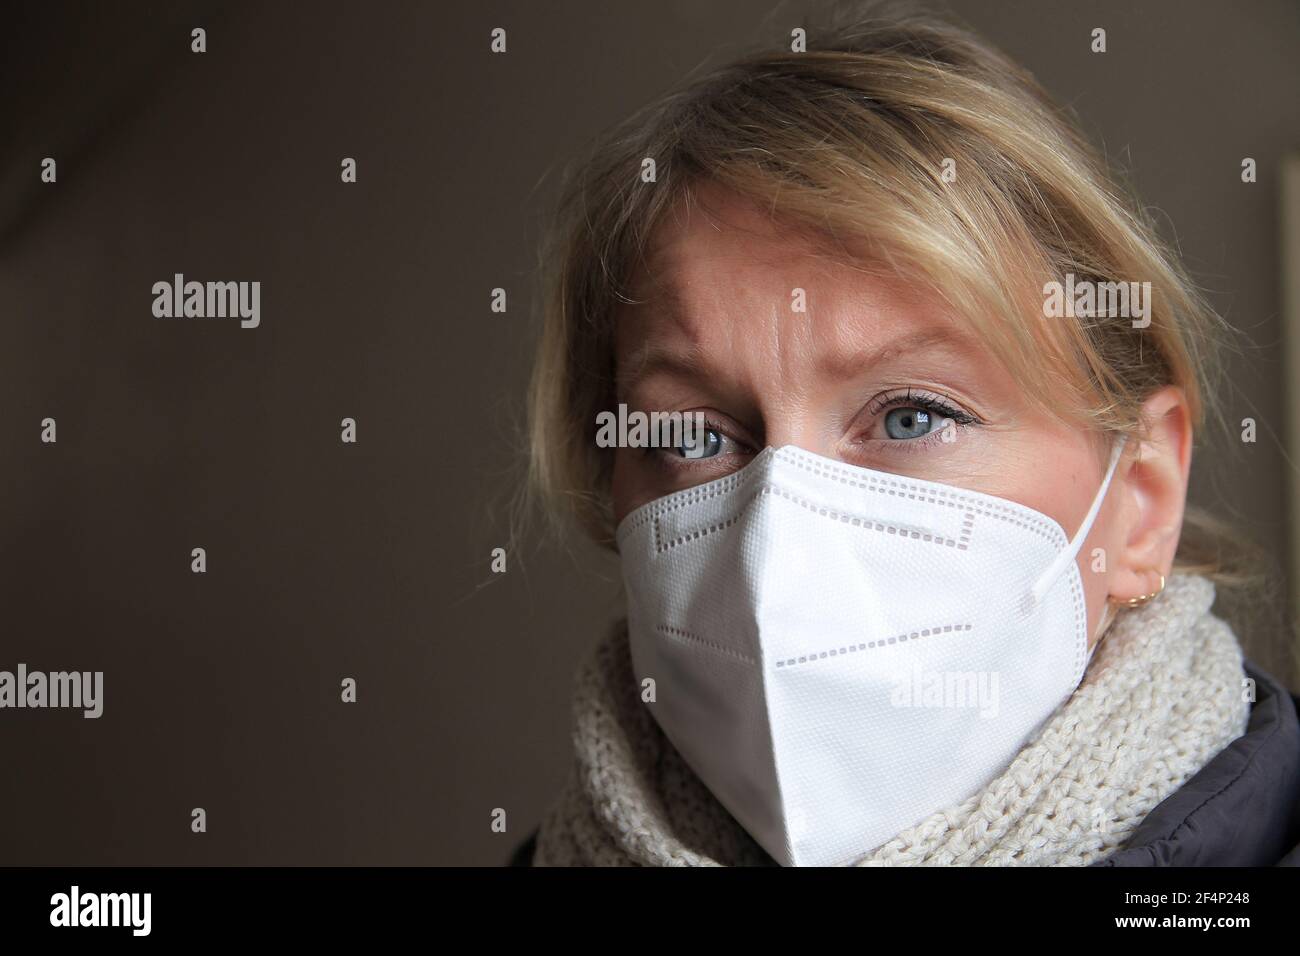 Frau mit Gesichtsmaske schützt sich vor covid-19 Stock Foto Stockfoto